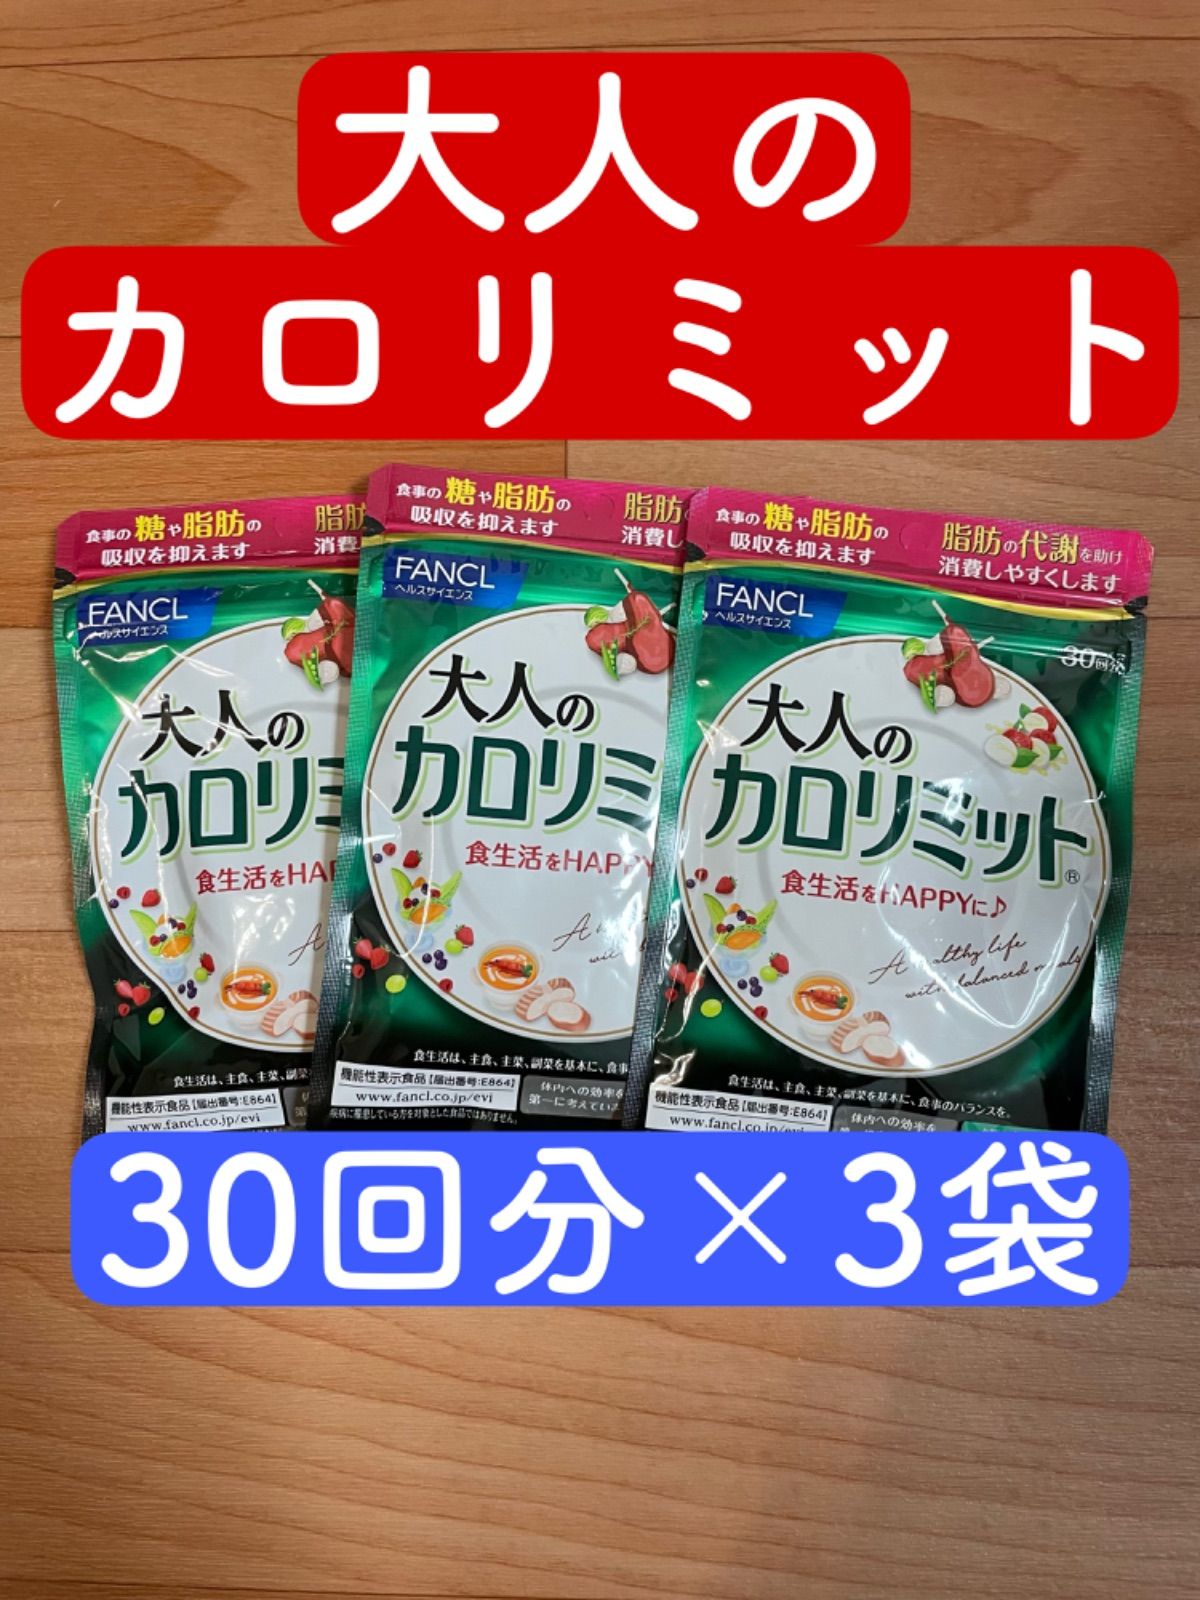 ちぃ様専用ファンケルカロリミット30回分11袋 - ダイエット食品